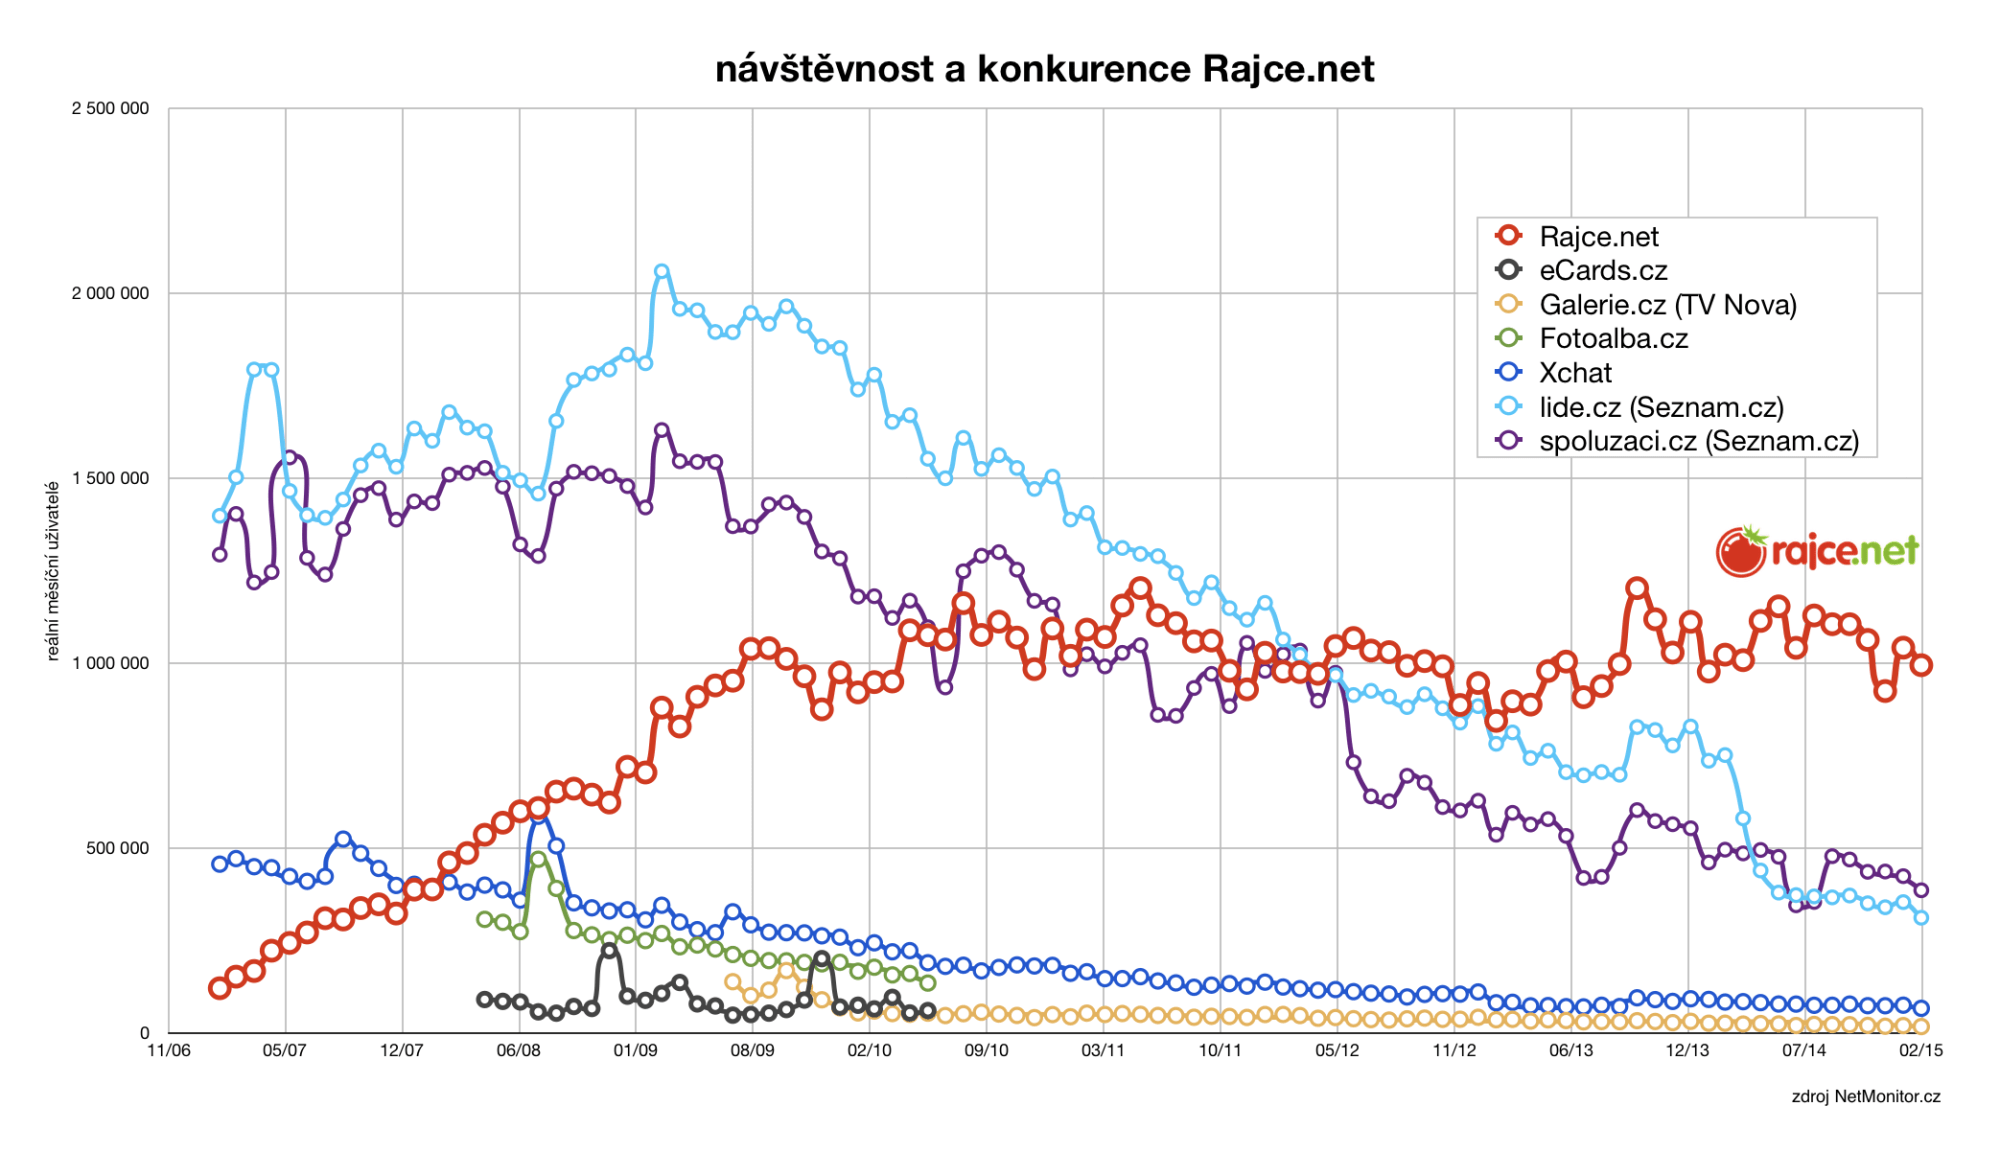 Růst návštěvnosti portálu Rajče.net a konkurence